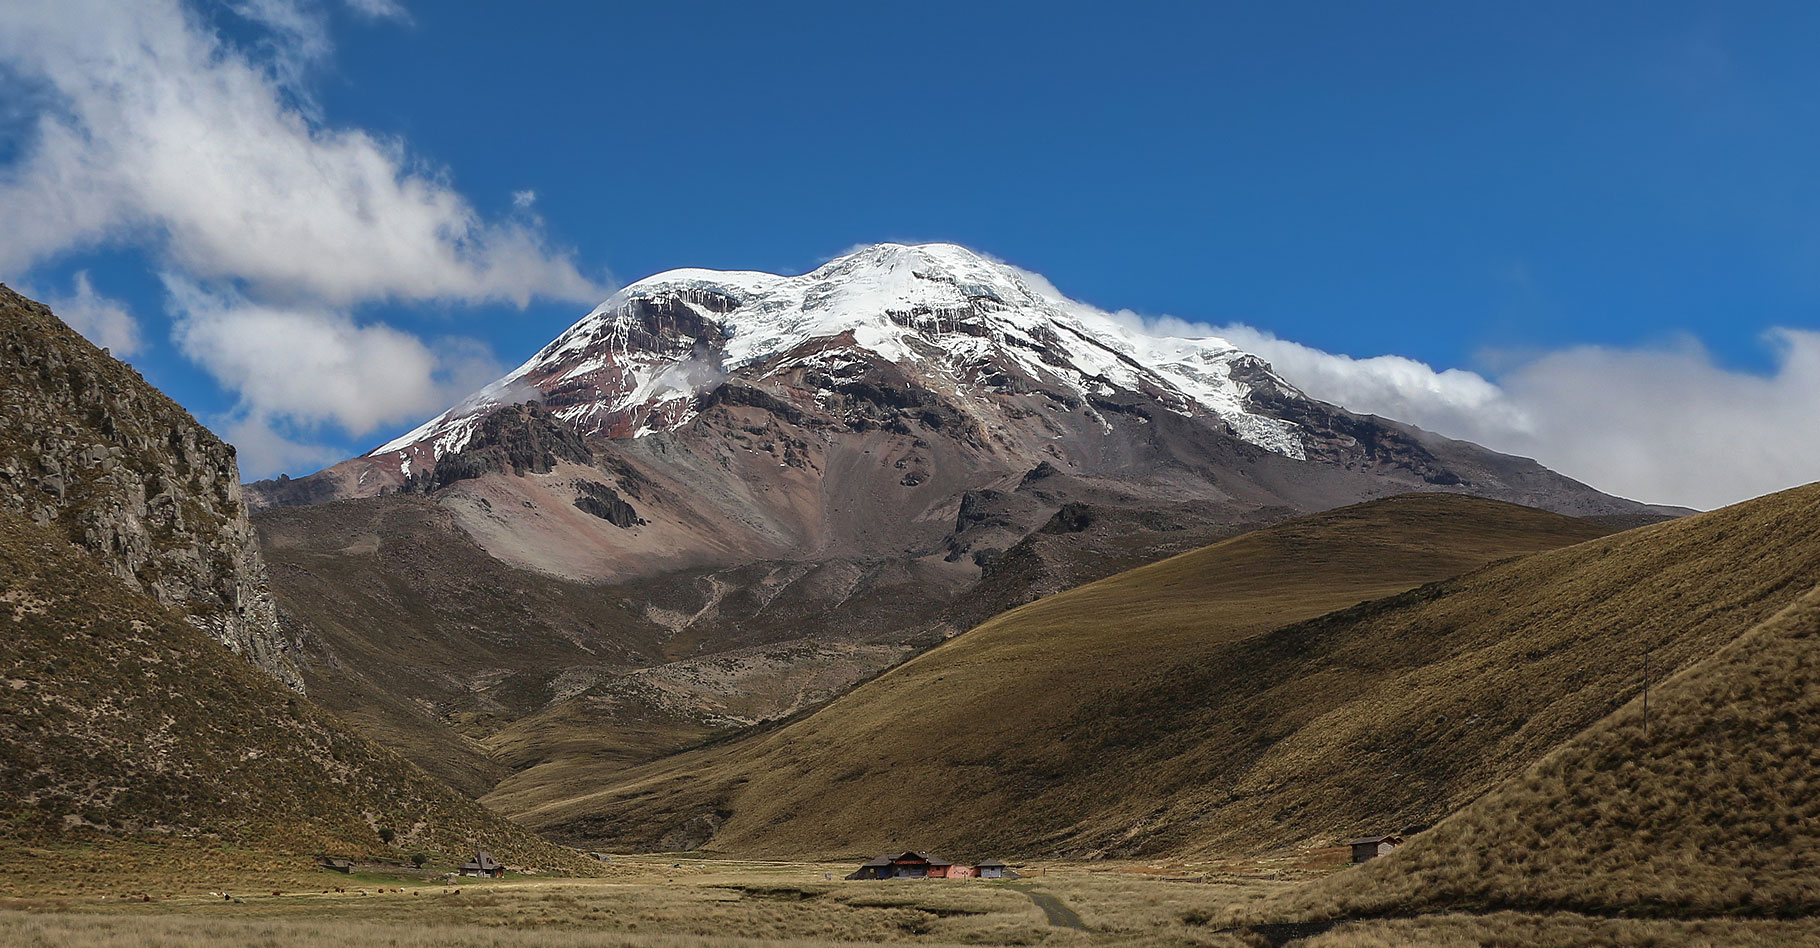 Le volcan Chimborazo (6268m) en Équateur.&nbsp;© Bernard Gagnon - Domaine public
